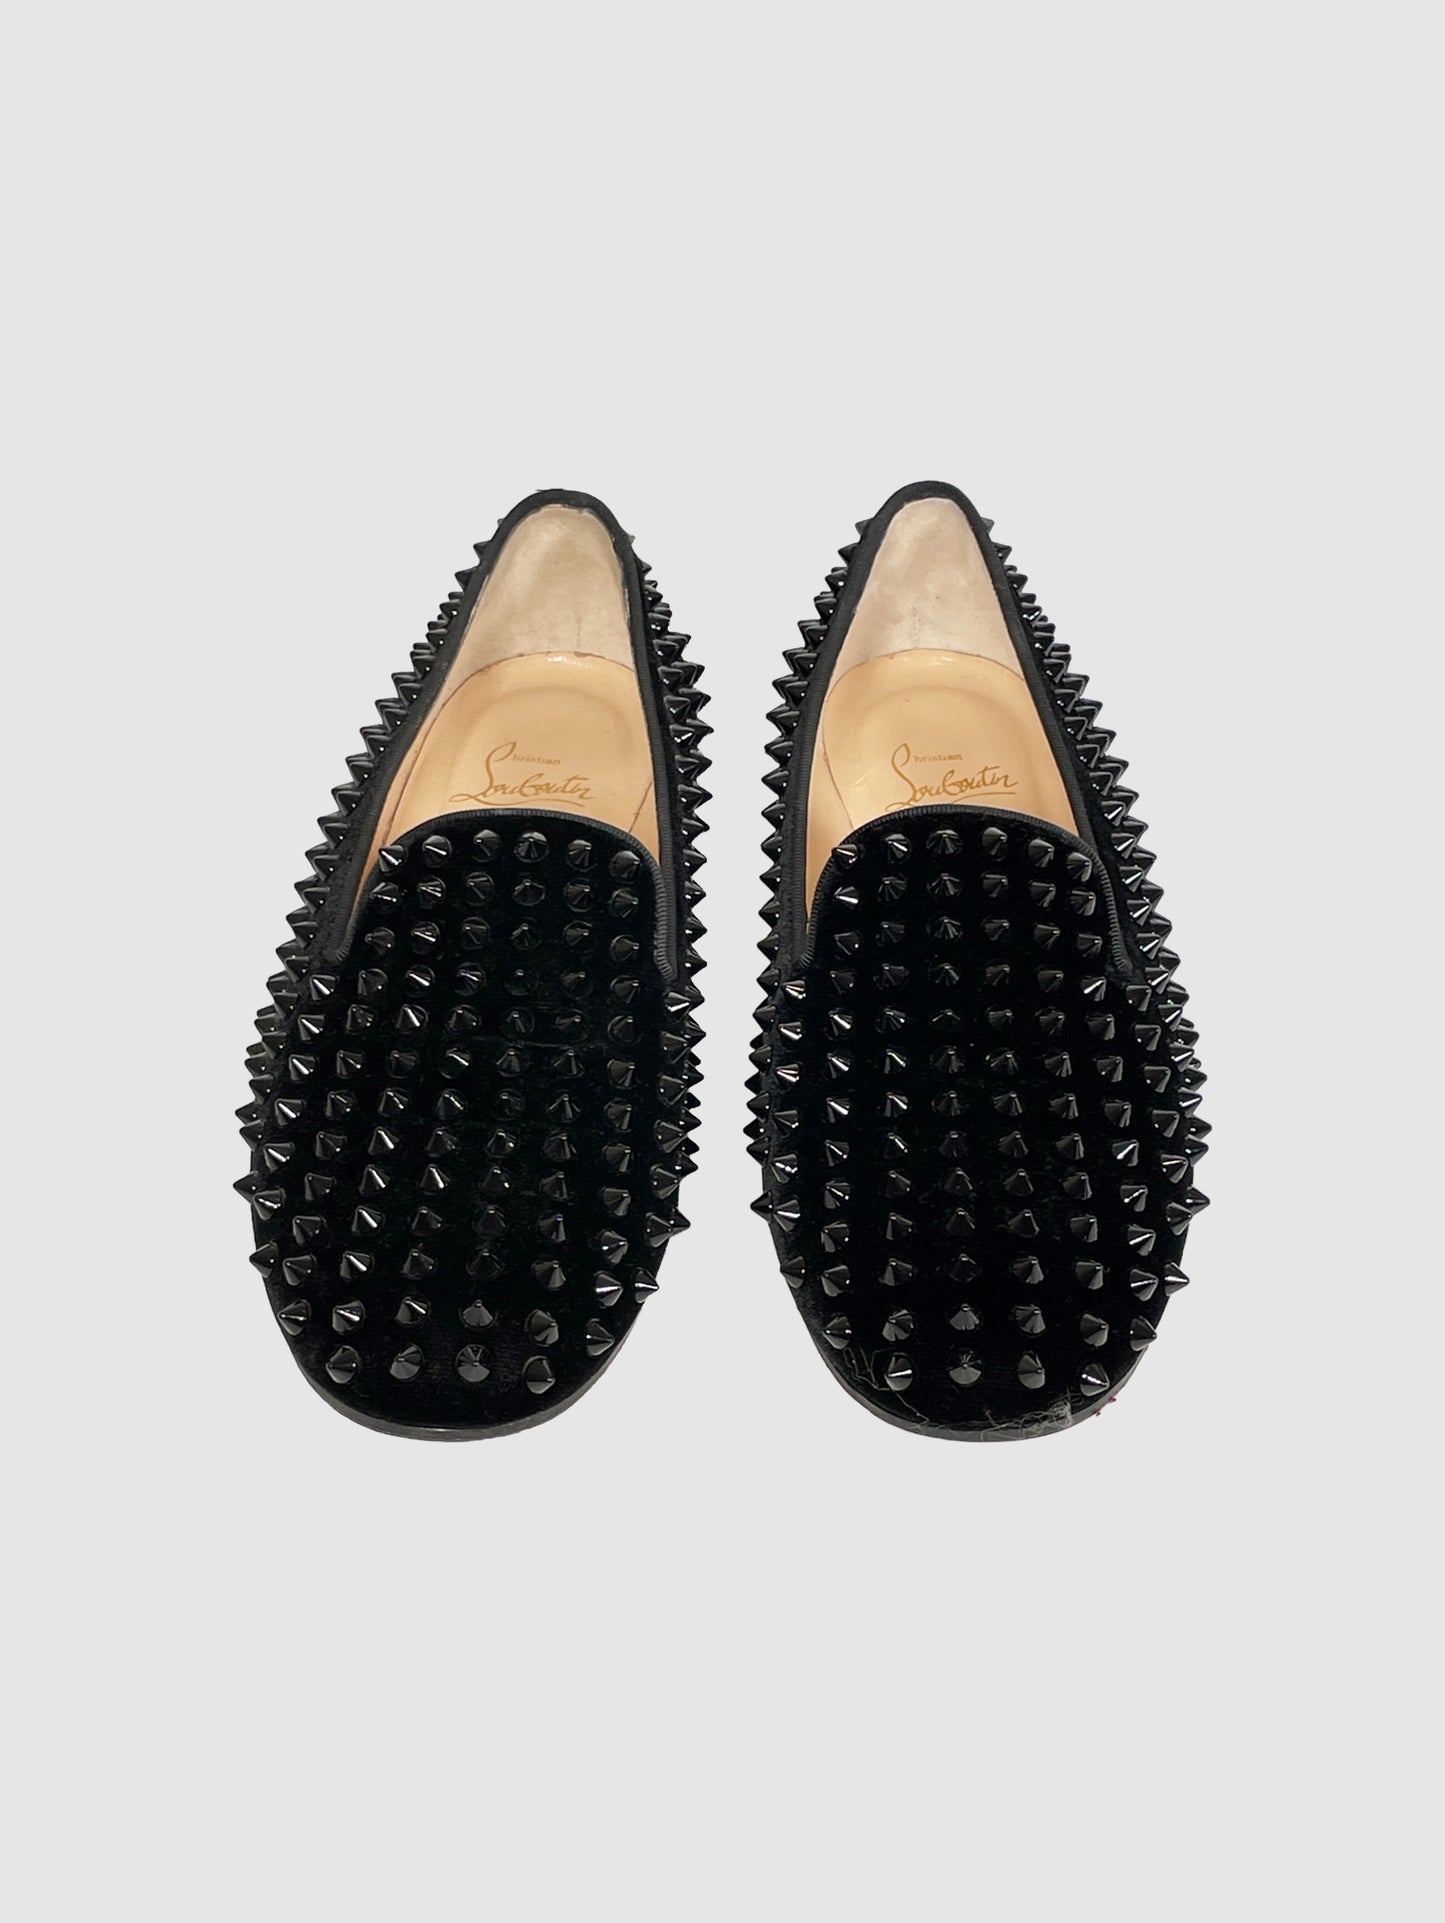 Dandelion Spike Loafers - Size 37.5